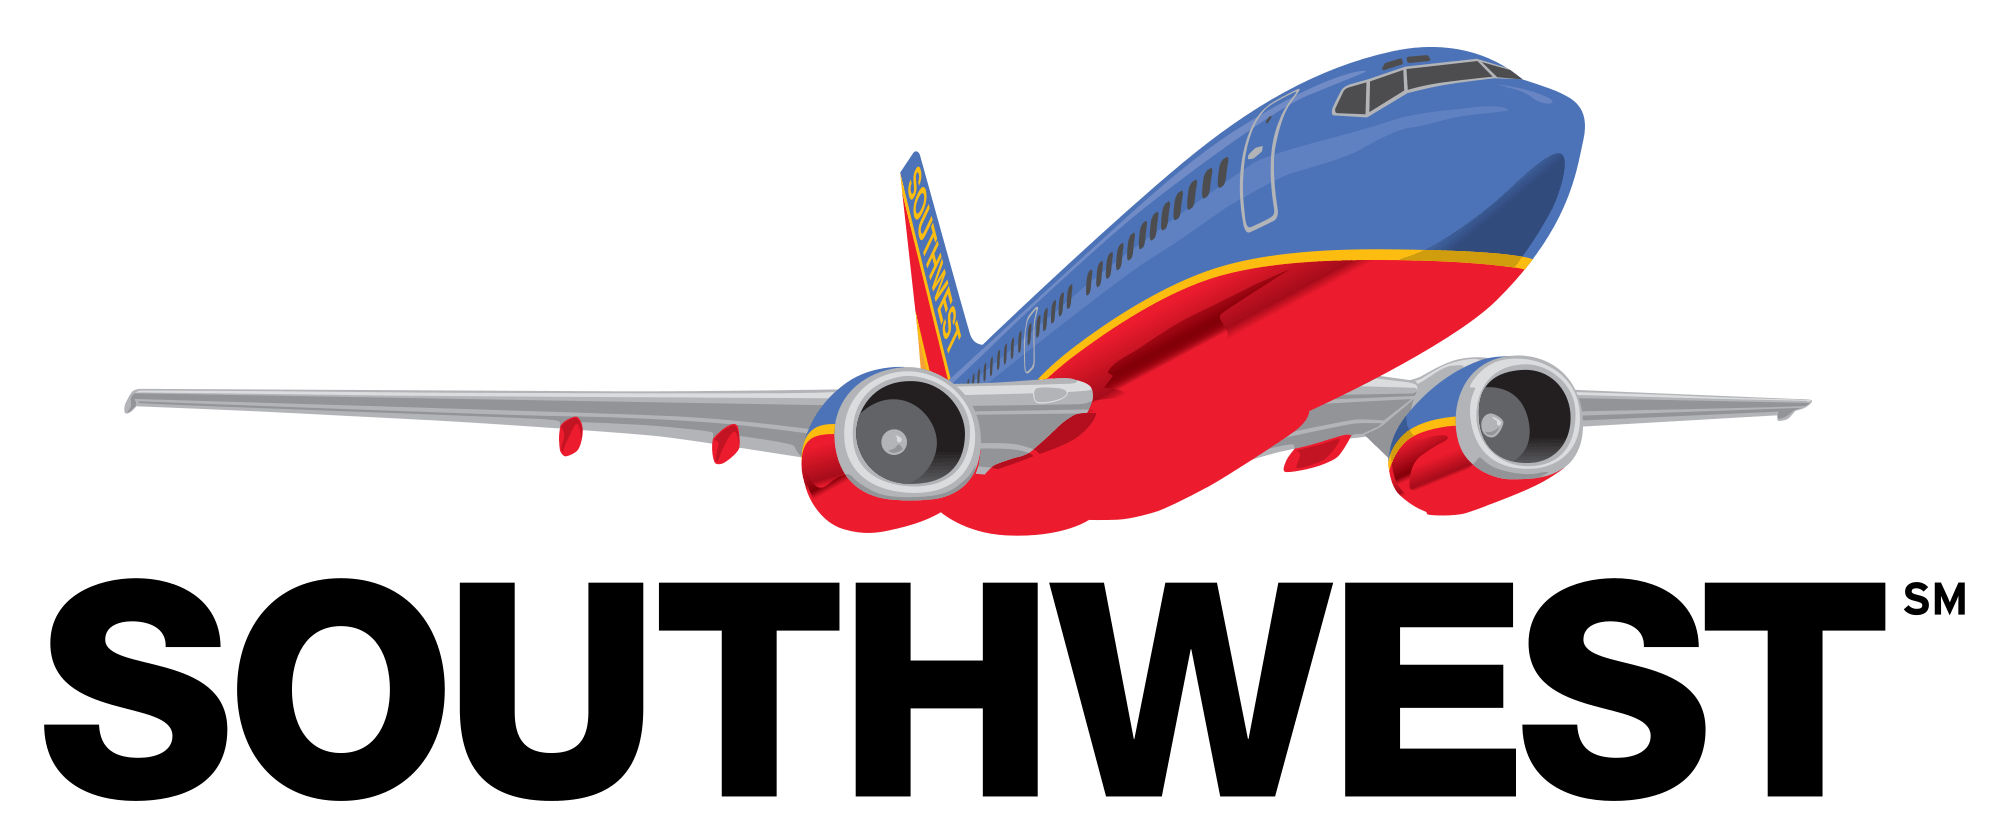 Southwest Company Logo - Southwest airlines Logos